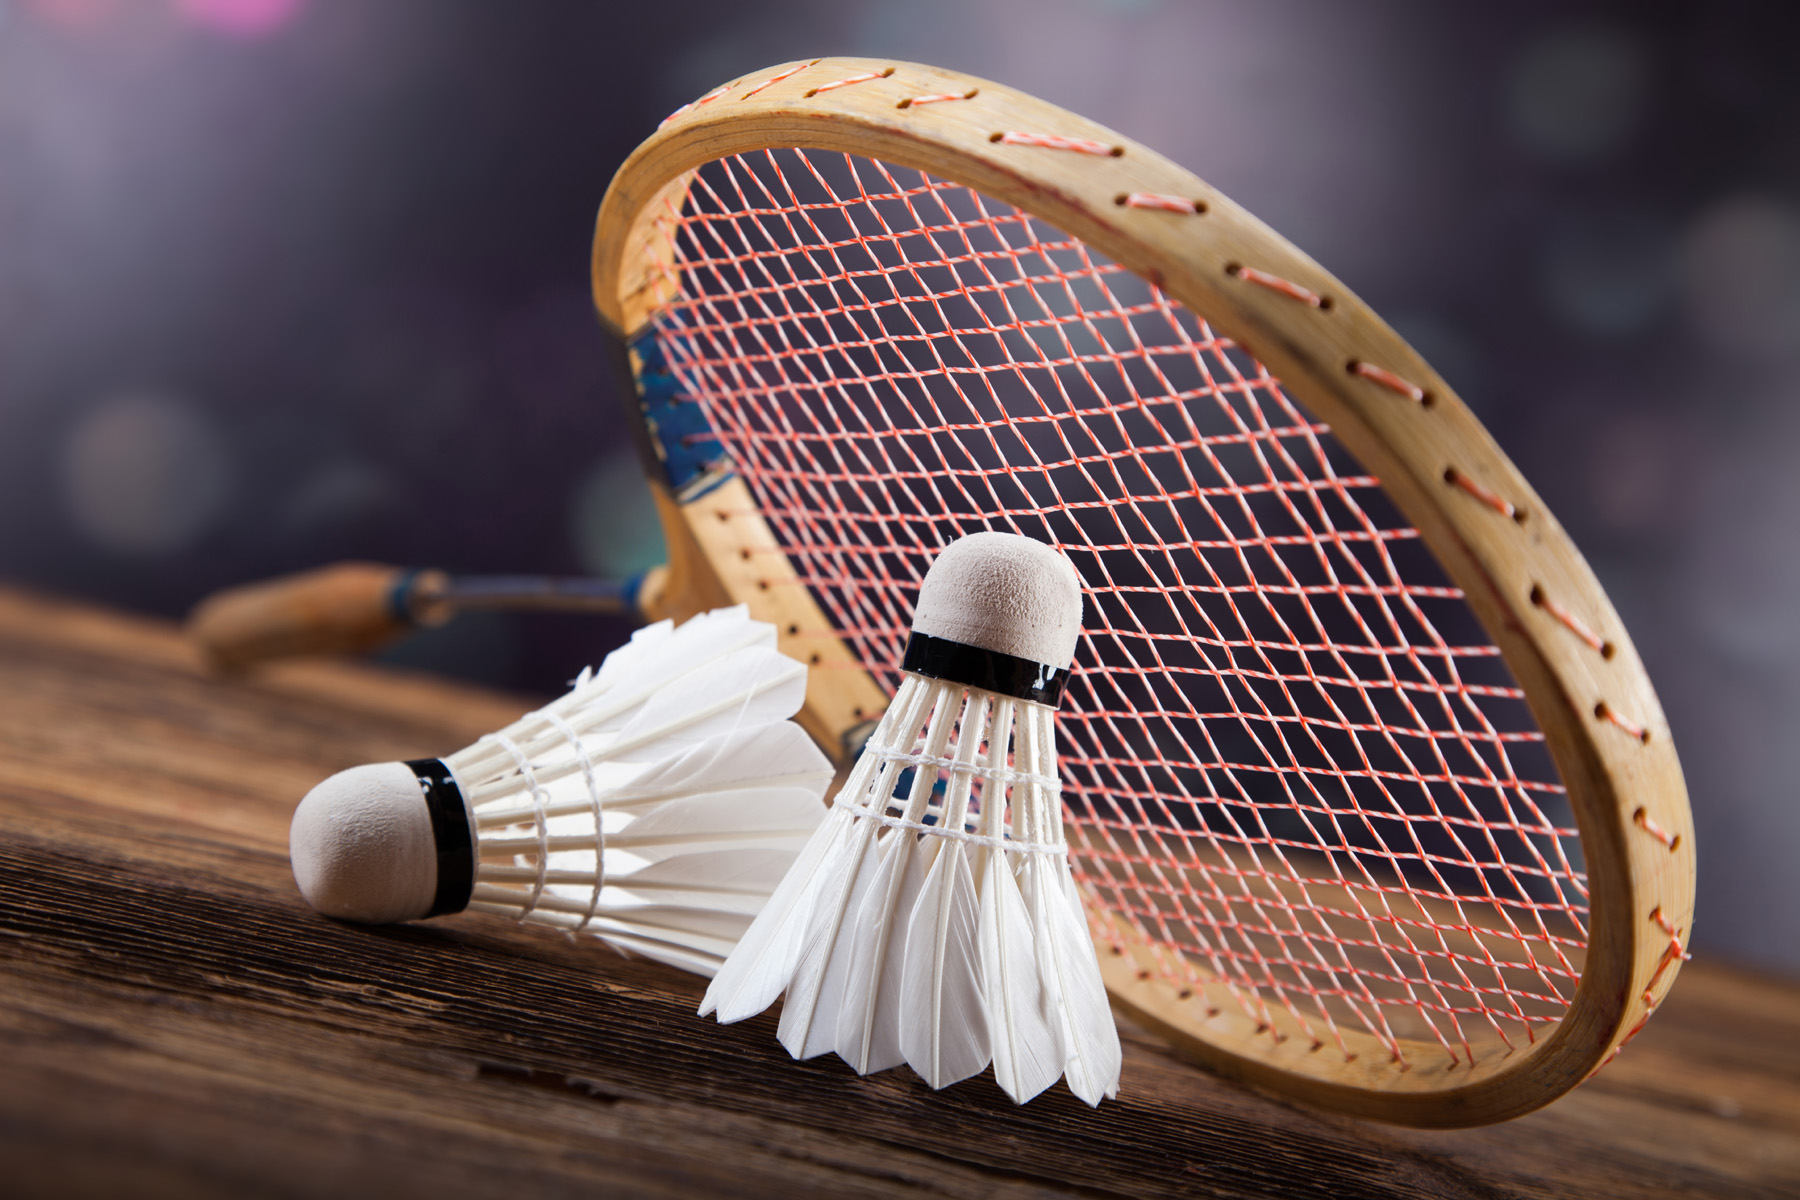 Badmintonda genel kurul hazırlıkları